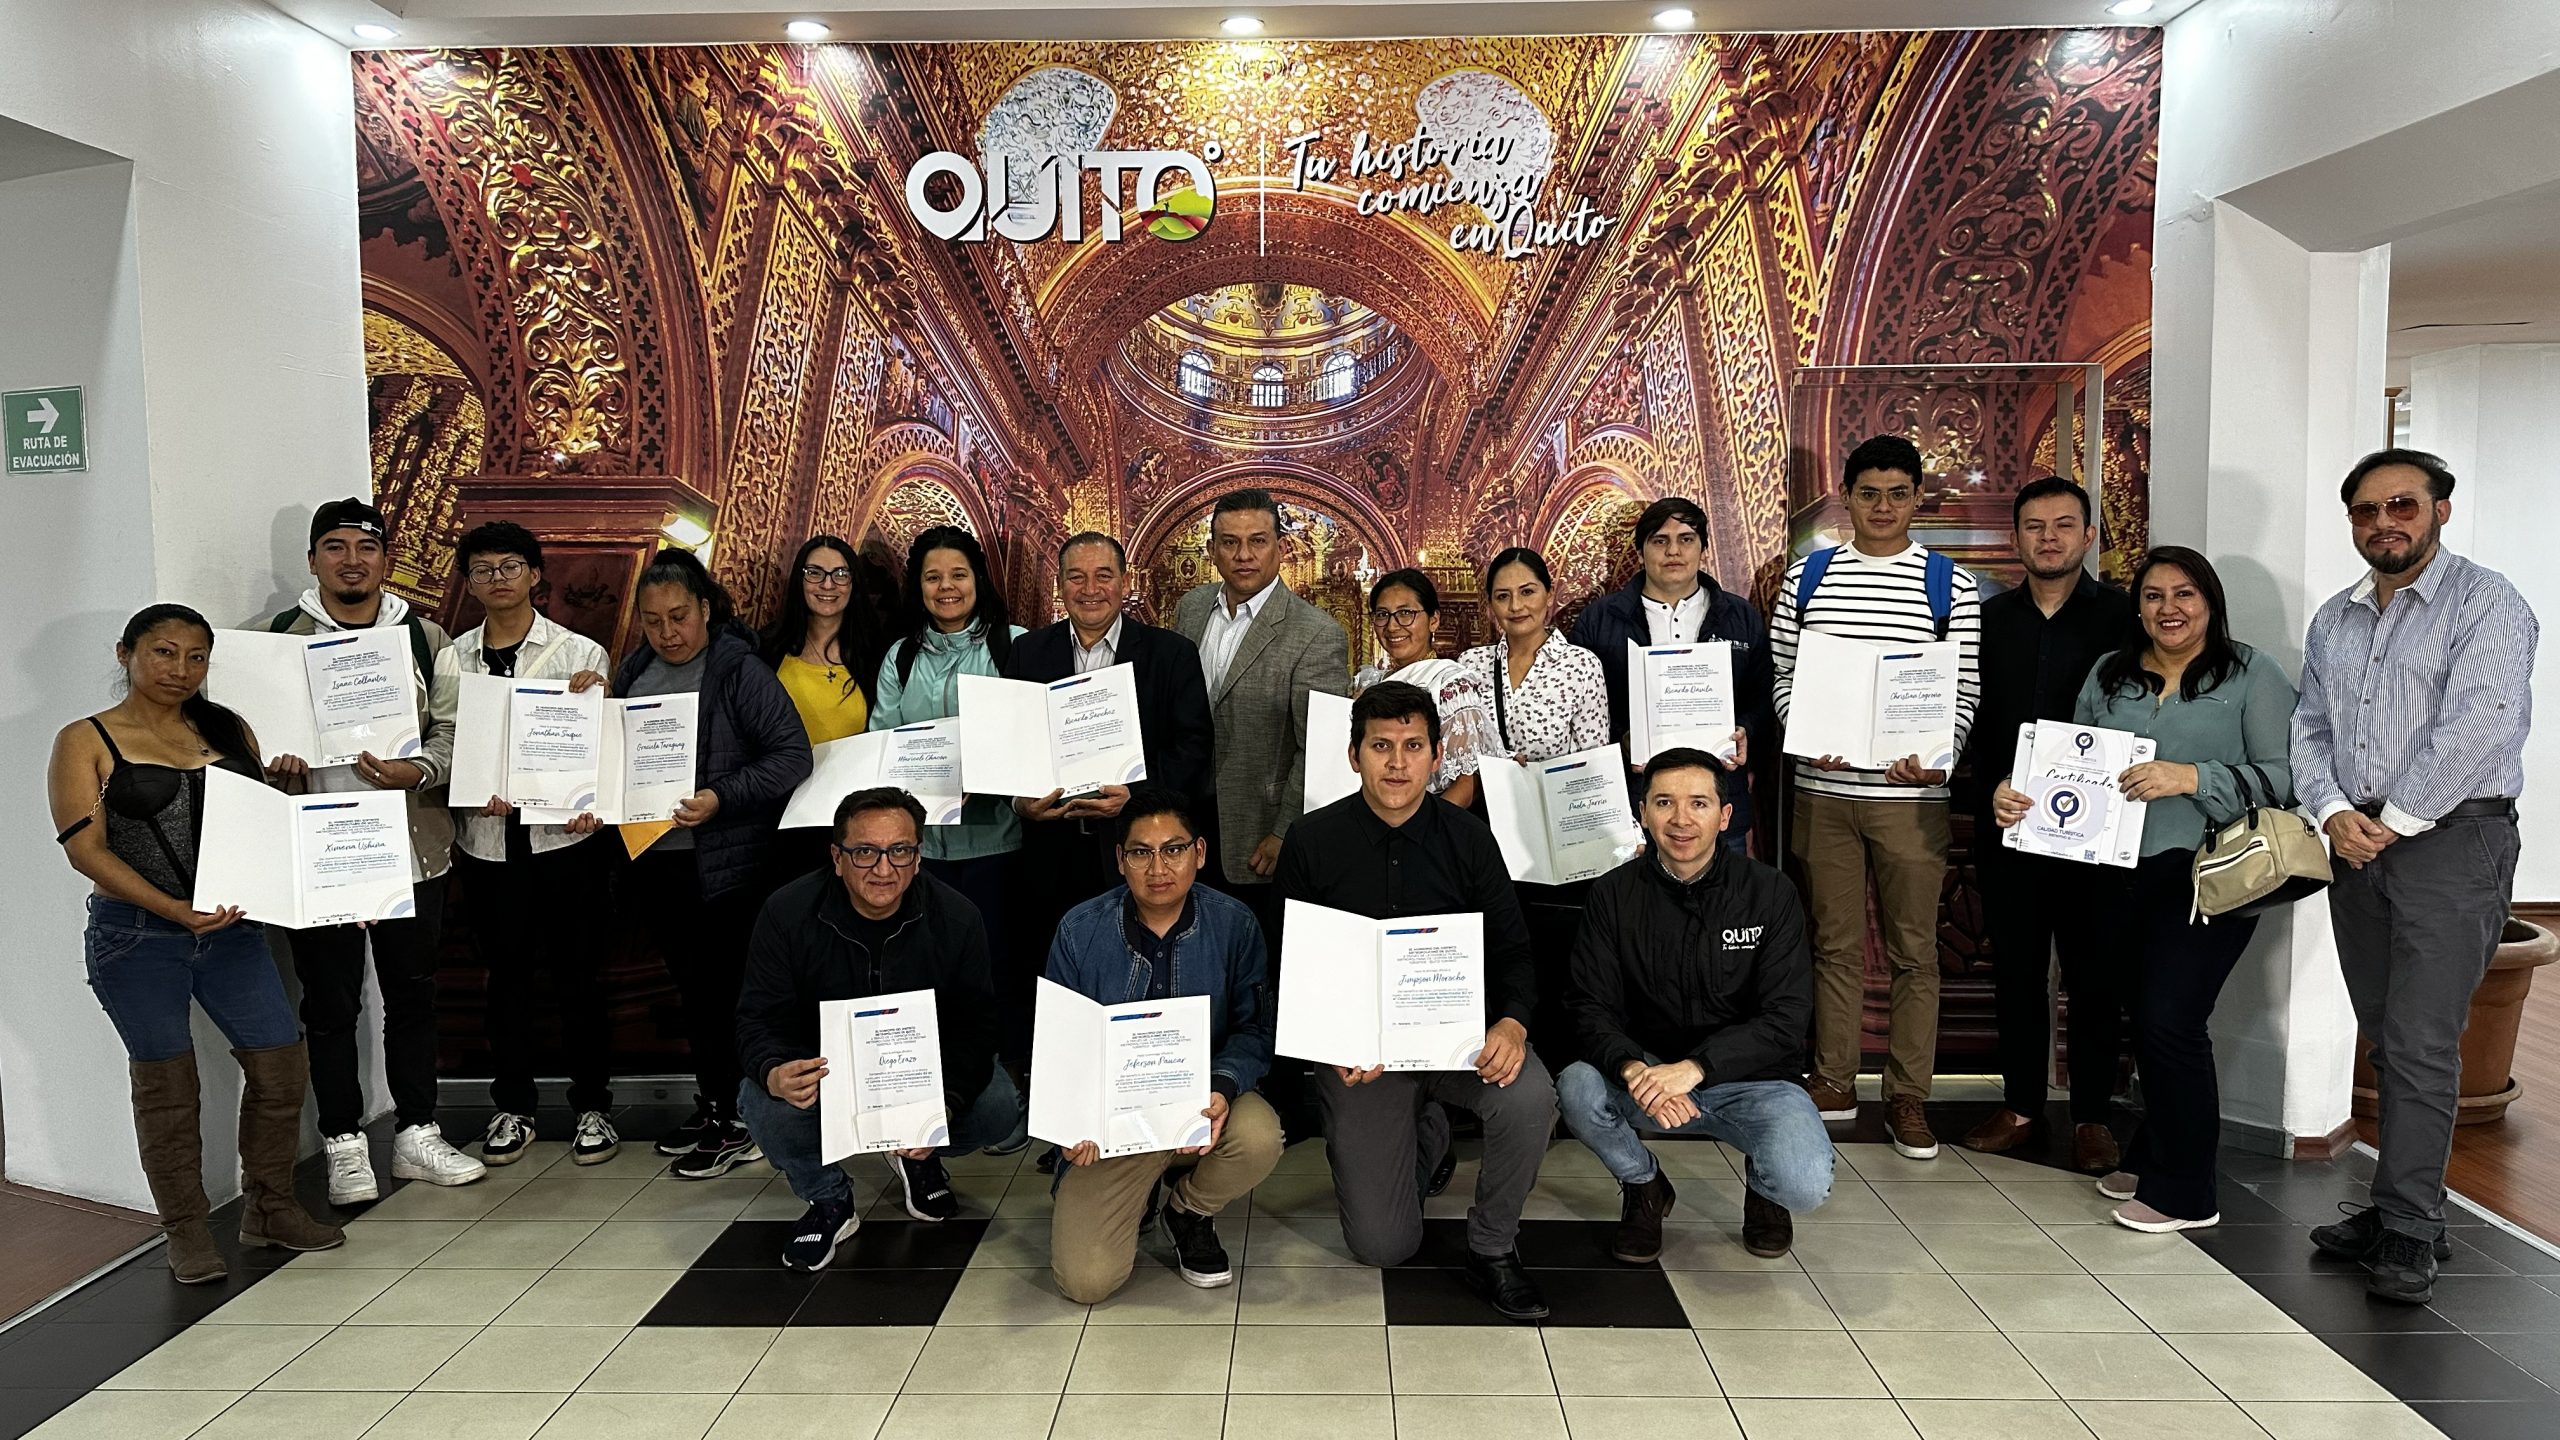 Trabajadores de establecimientos turísticos aprenderán inglés con el aporte de Quito Turismo